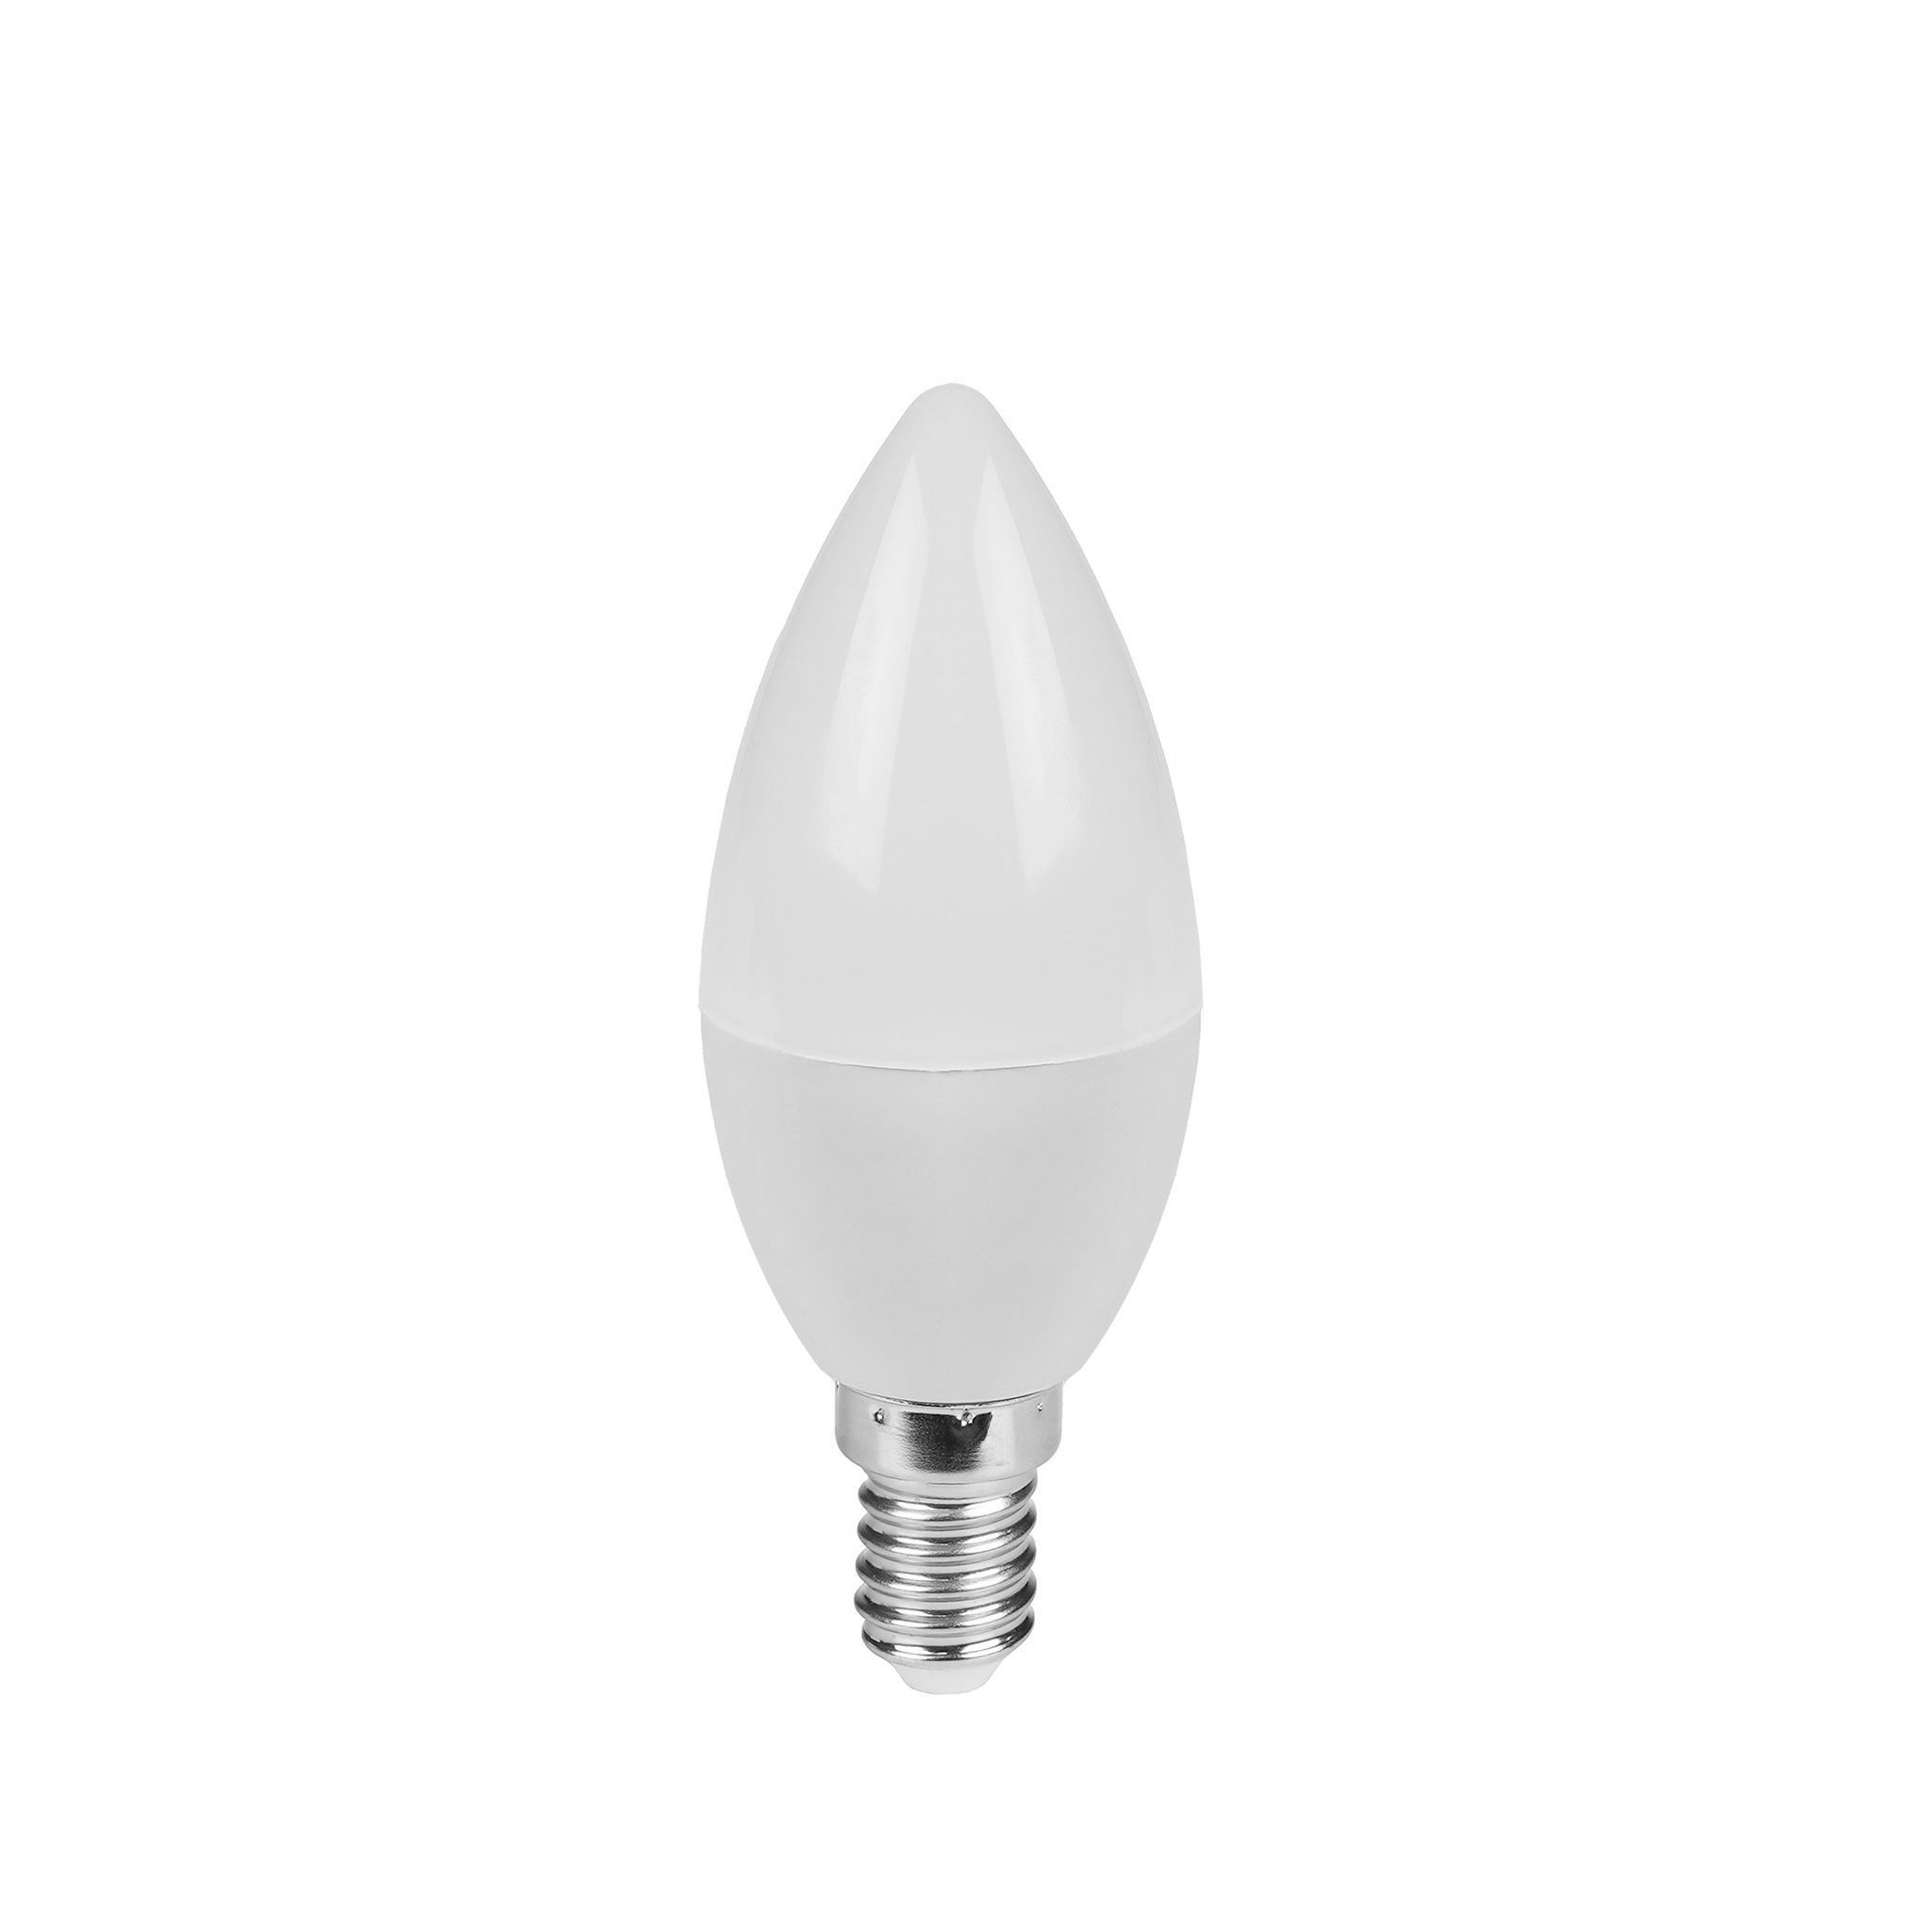 LED-lampa AGGE E14 - 6W / 3000K